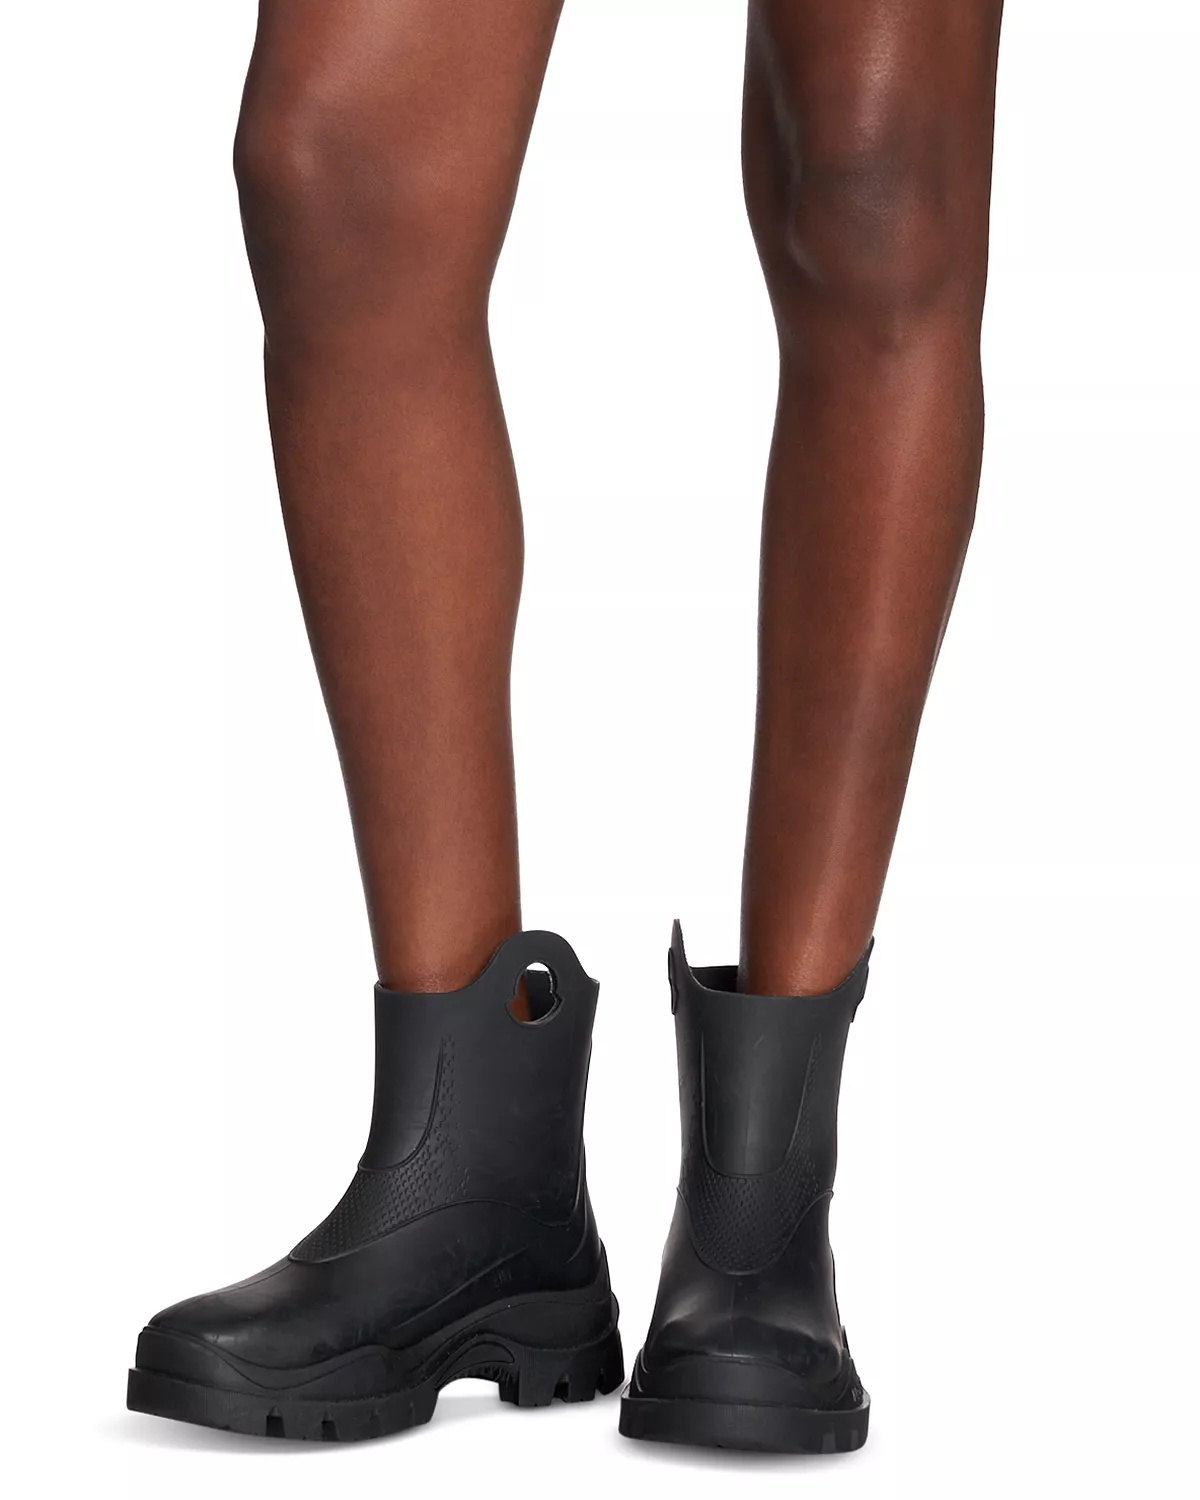 Women's Misty Rain Boots - 2